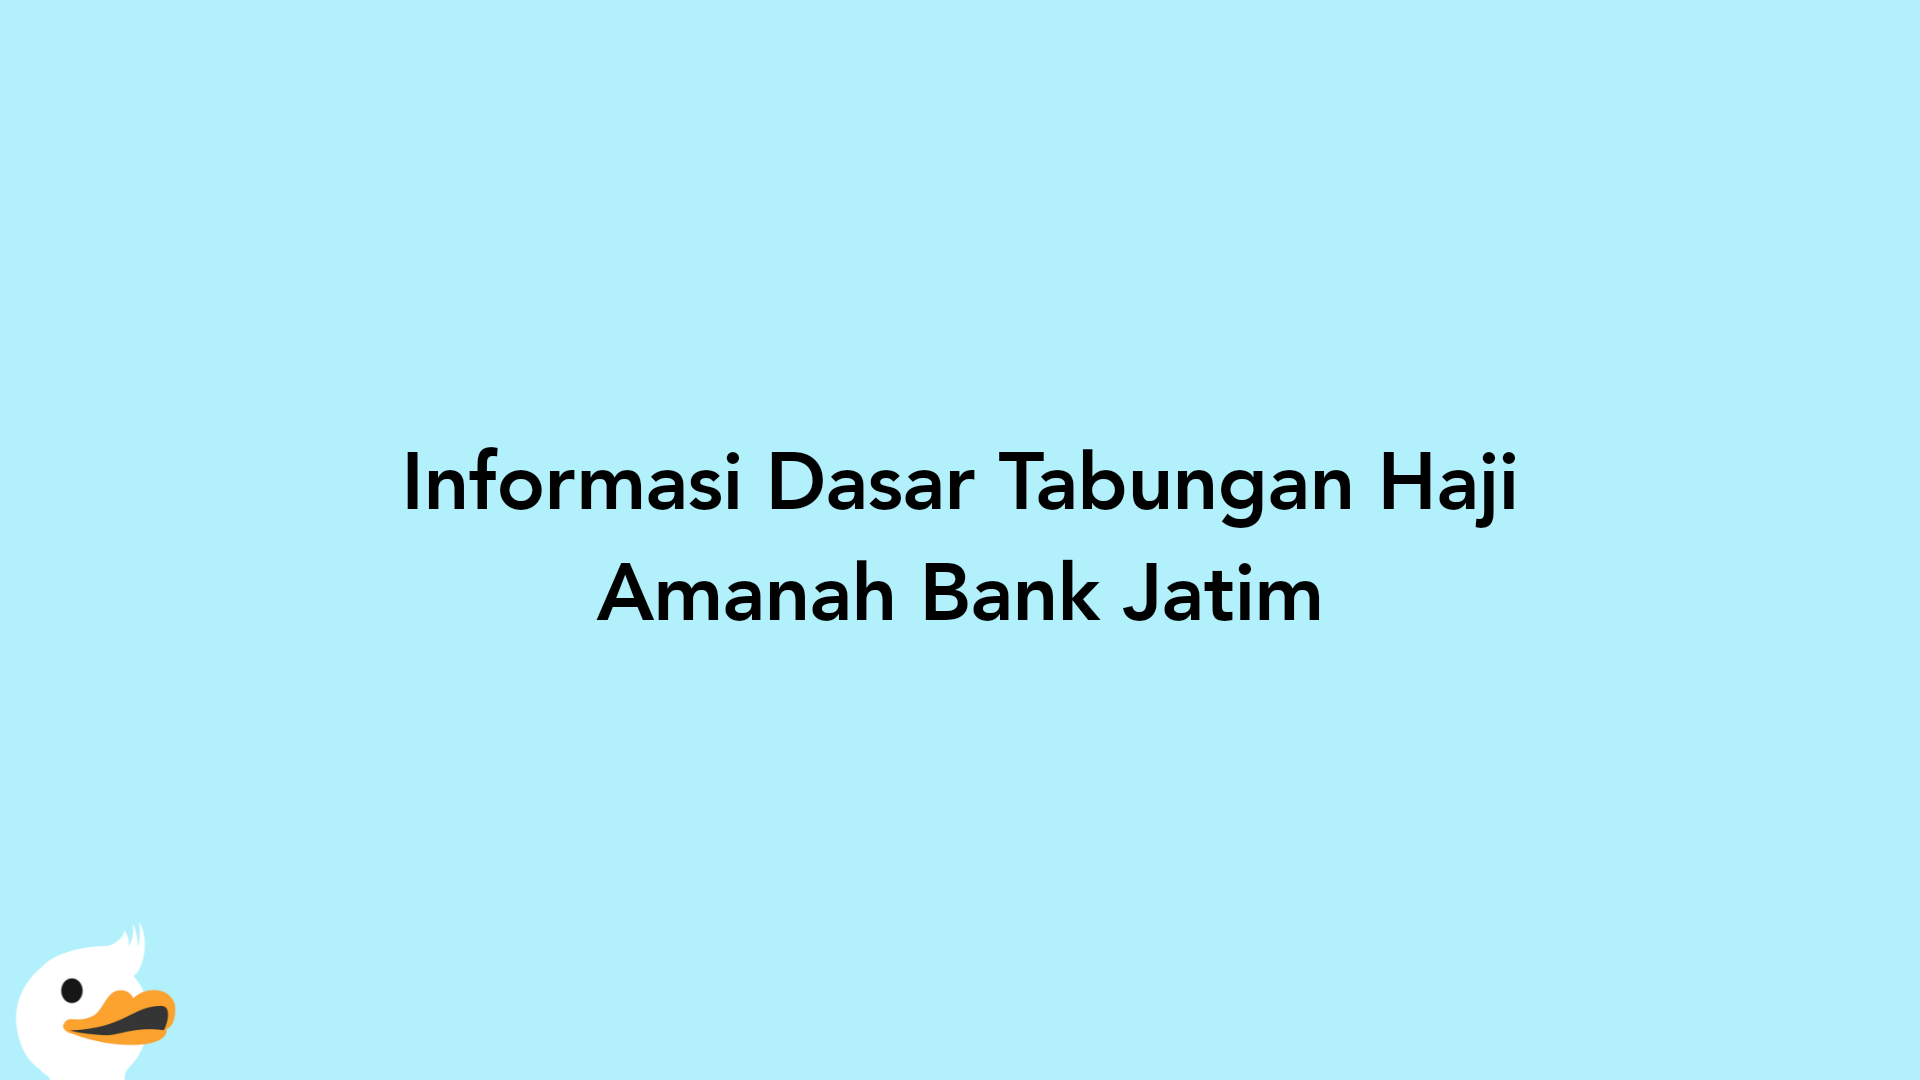 Informasi Dasar Tabungan Haji Amanah Bank Jatim